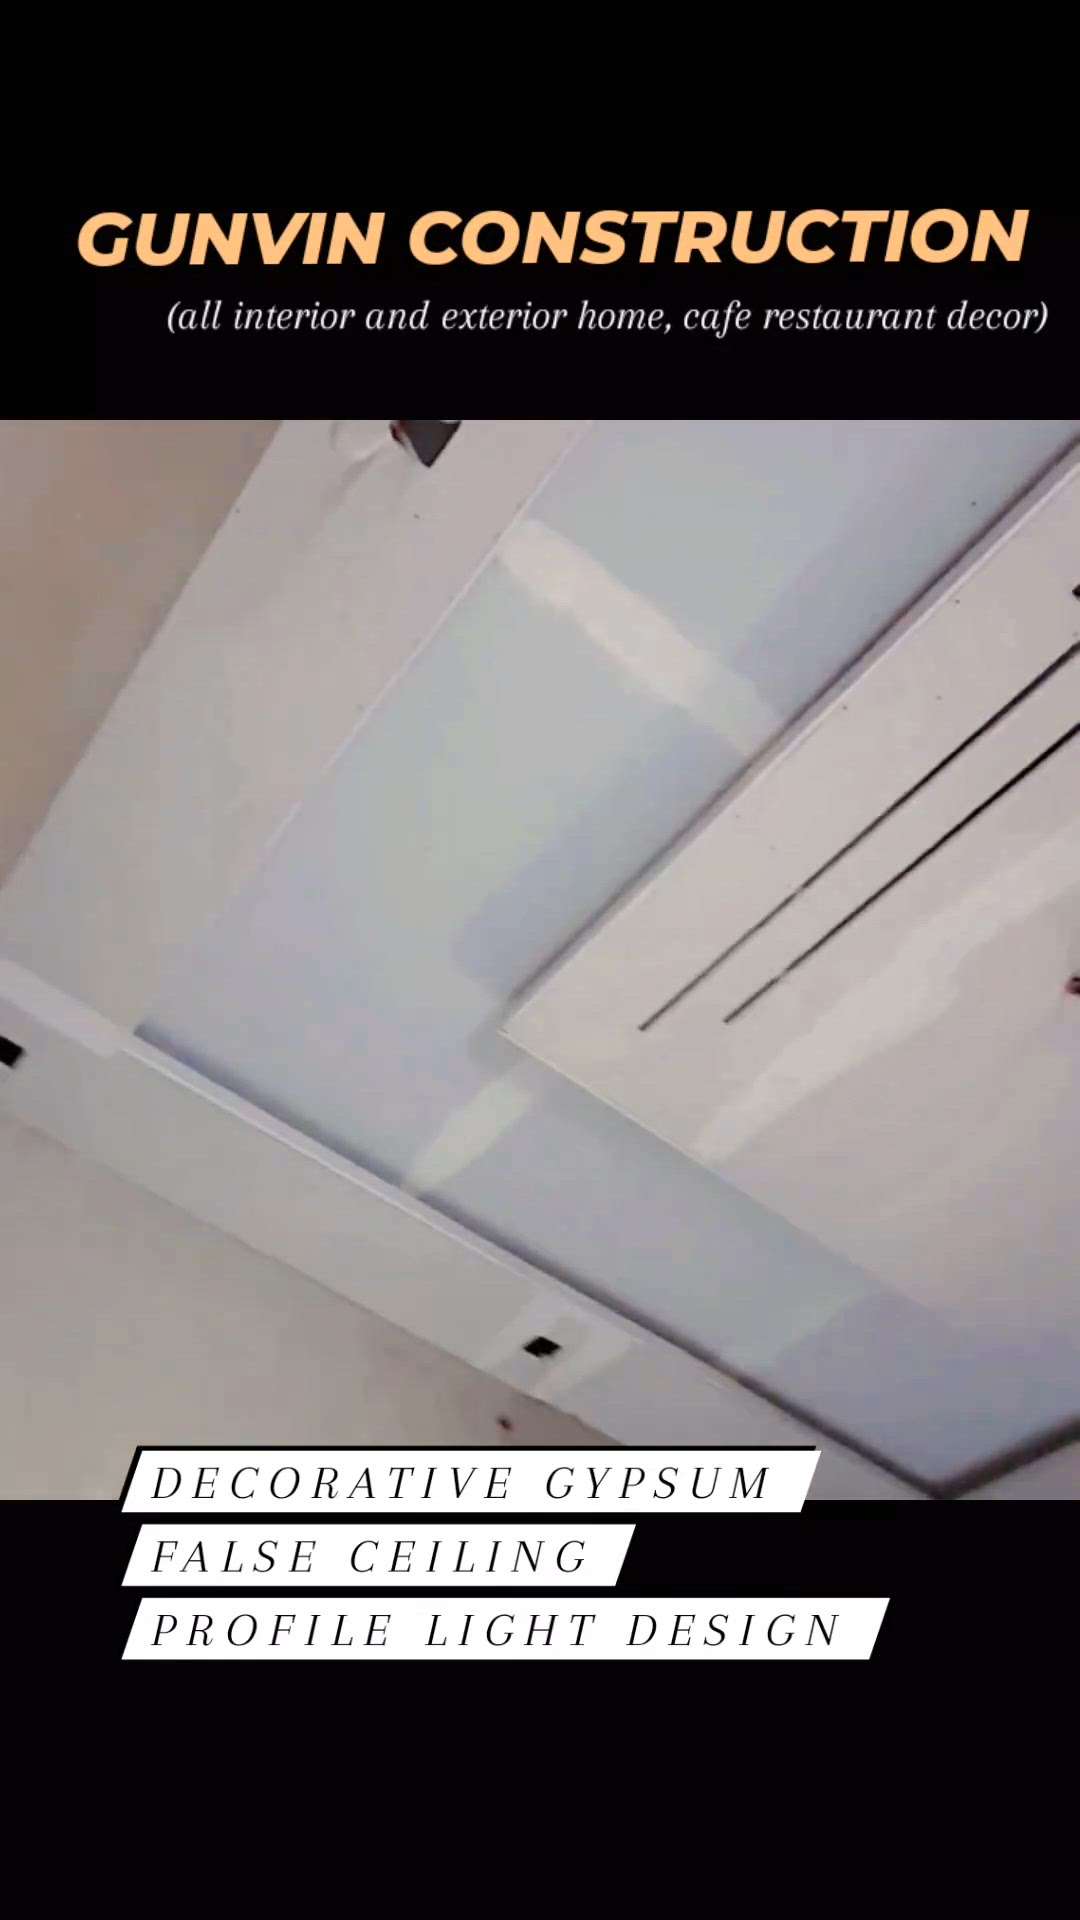 Attractive Gypsum ceiling designing with profile light Design... #GypsumCeiling #attractivehousedesigns #InteriorDesigner #FalseCeiling #LivingRoomCeilingDesign #BedroomCeilingDesign